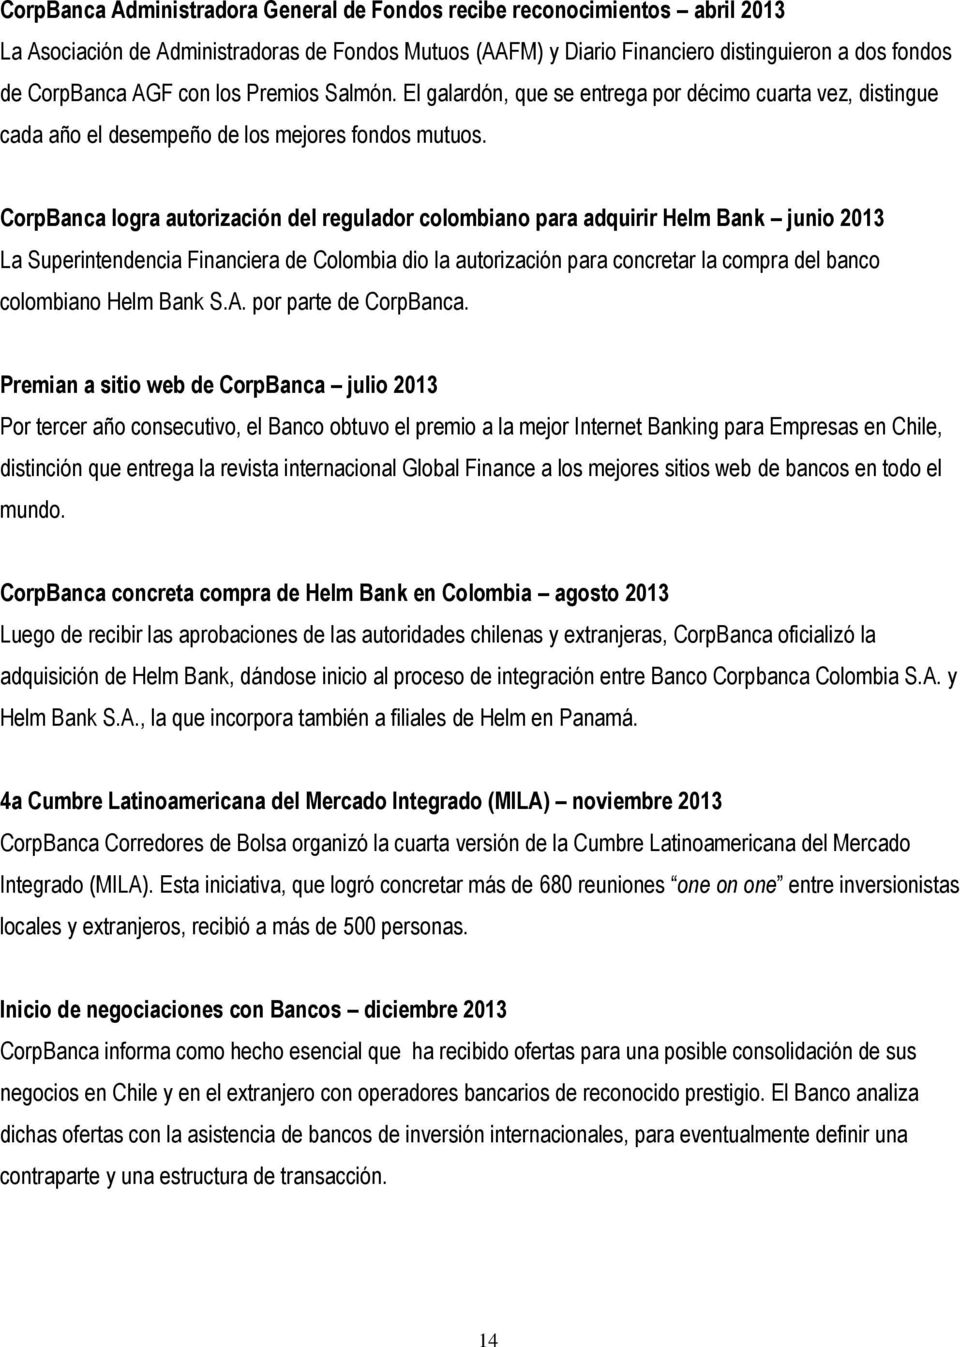 CorpBanca logra autorización del regulador colombiano para adquirir Helm Bank junio 2013 La Superintendencia Financiera de Colombia dio la autorización para concretar la compra del banco colombiano